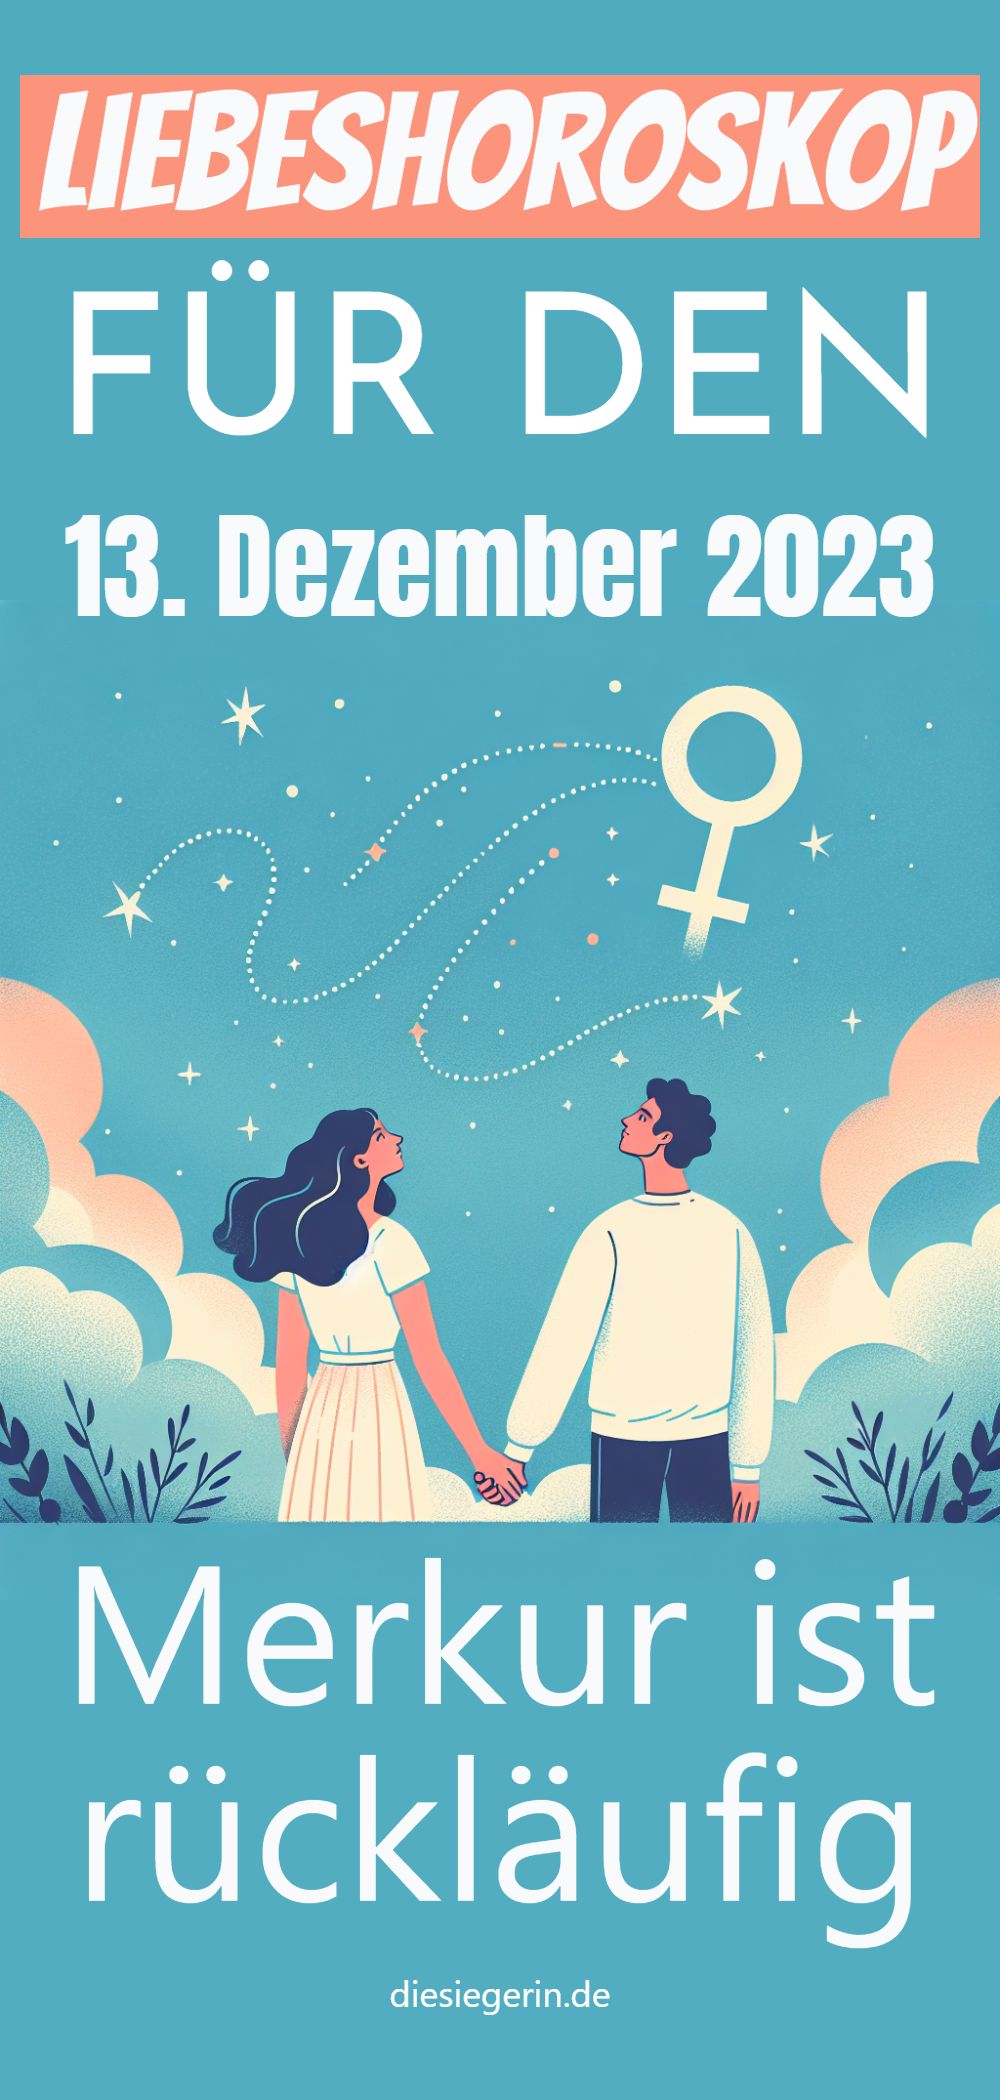 Liebeshoroskop Merkur ist rückläufig FÜR DEN 13. Dezember 2023